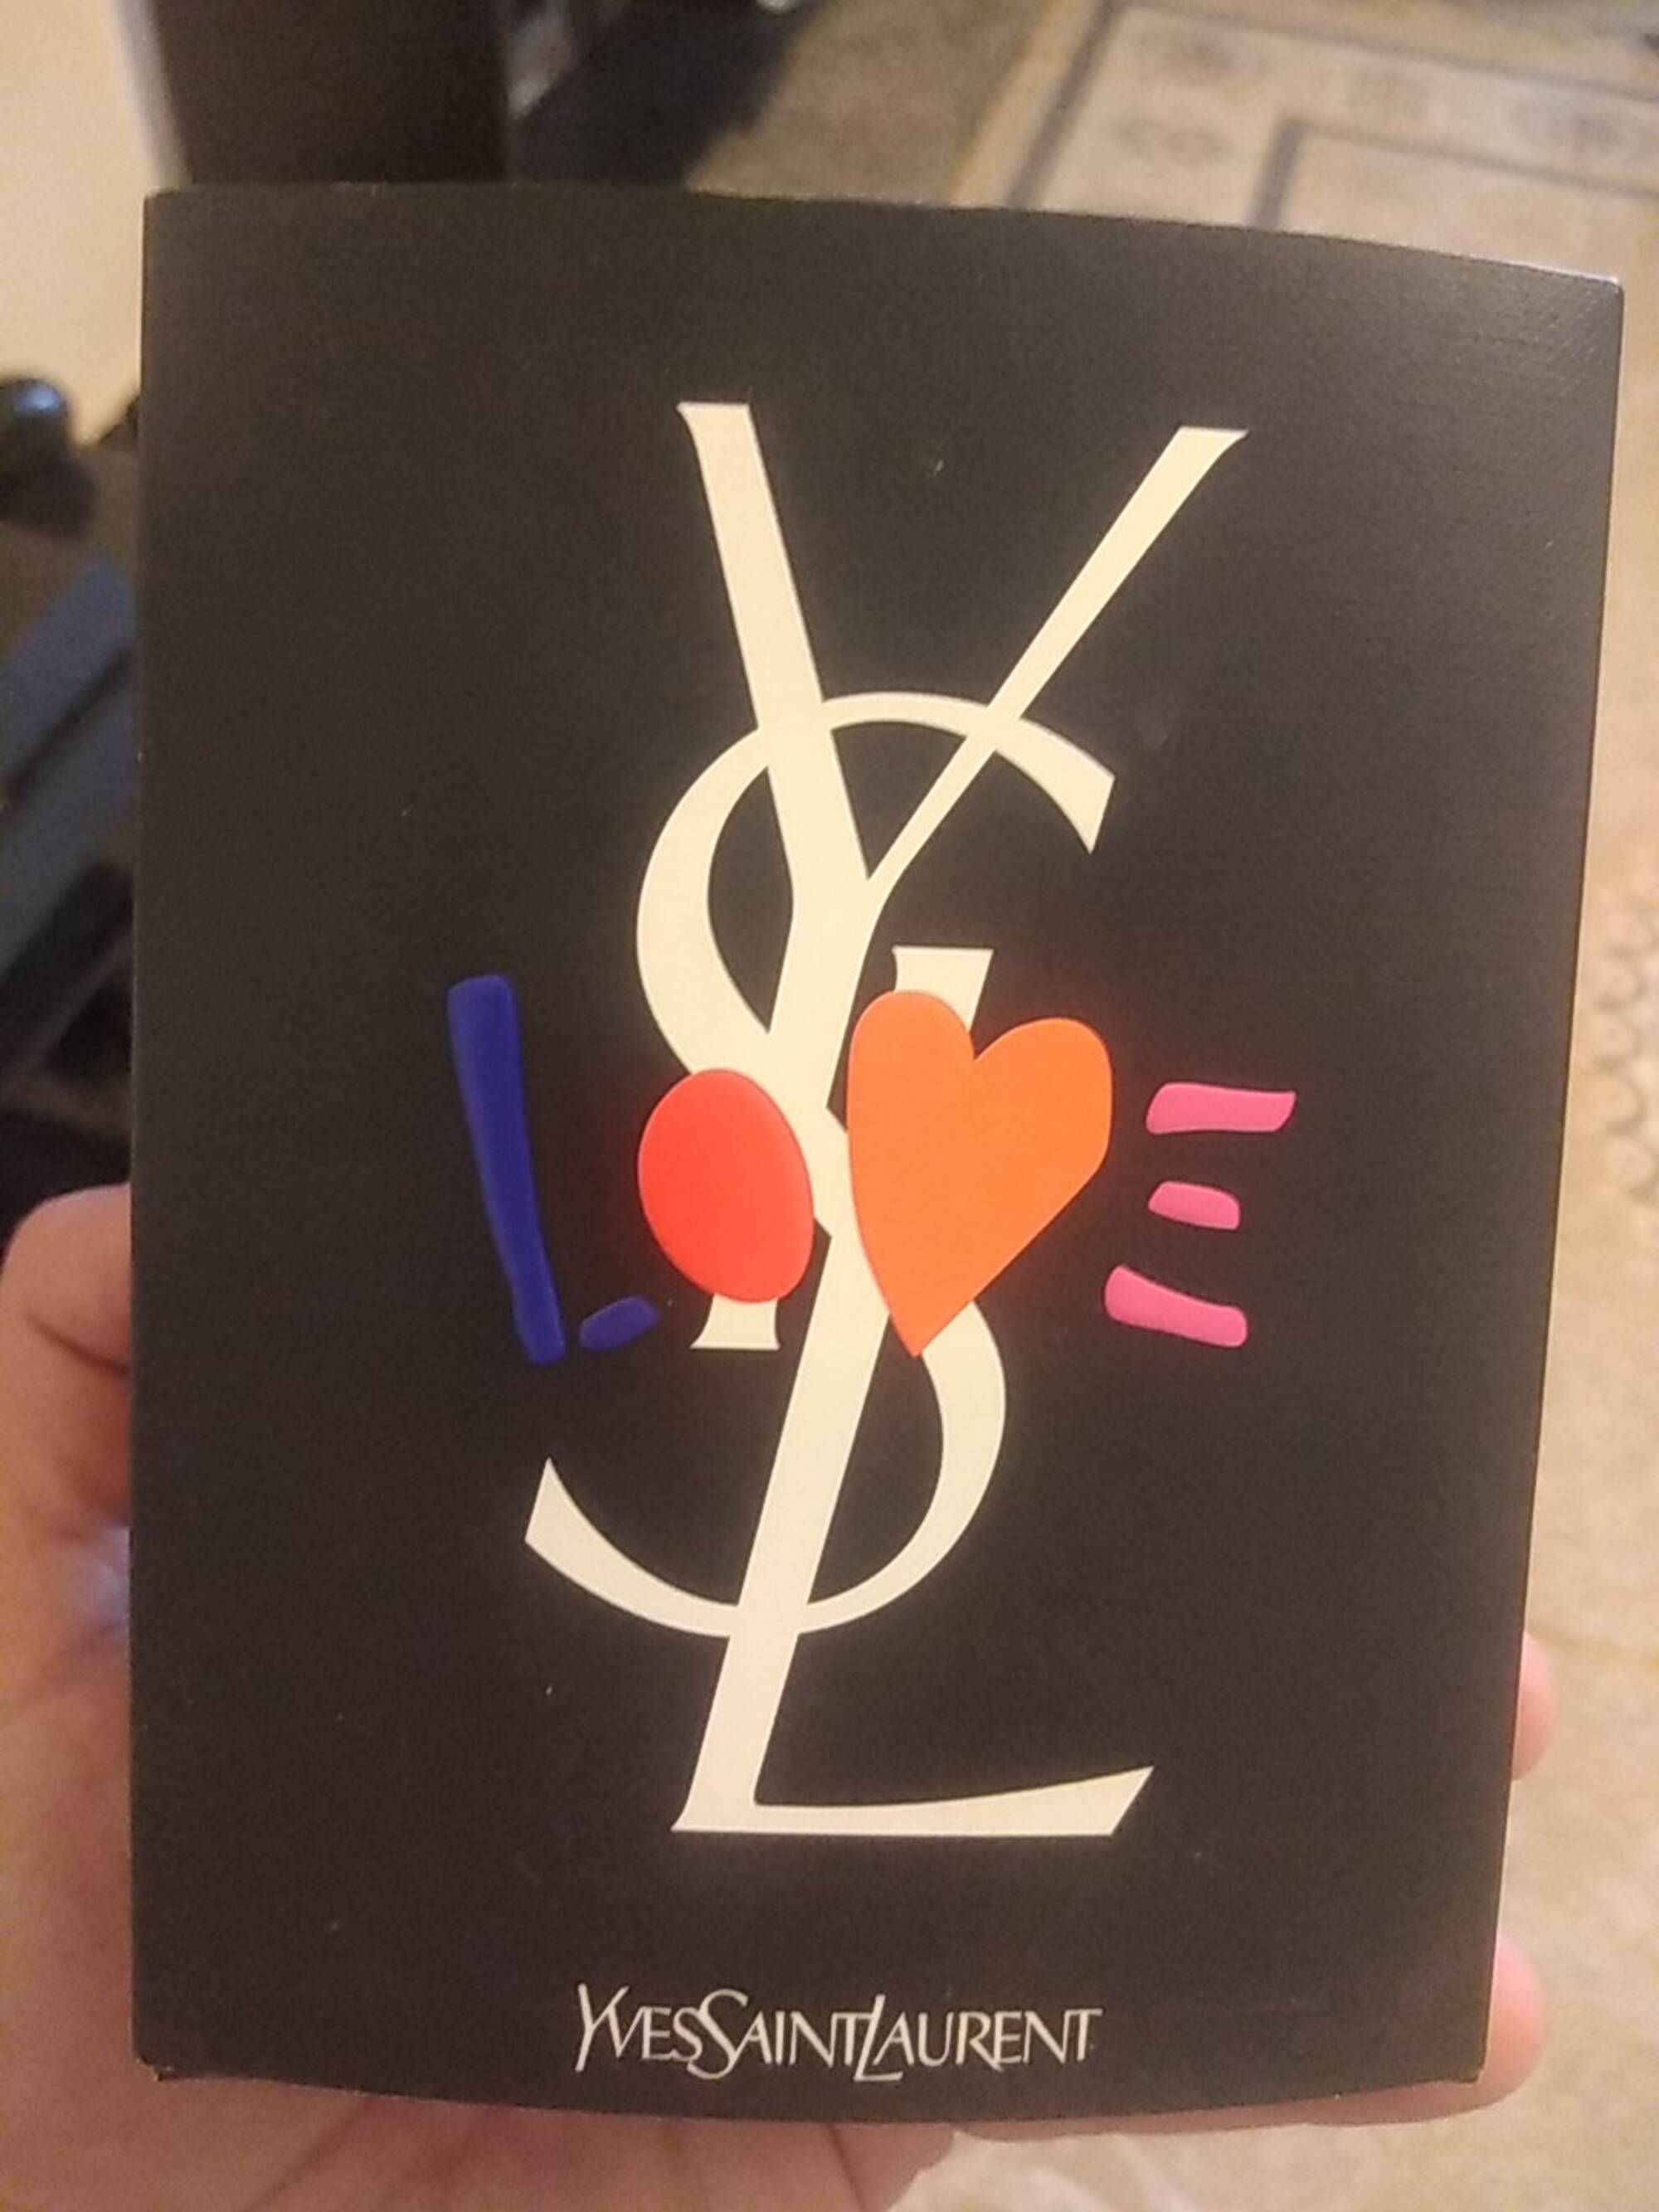 YVES SAINT LAURENT - YSL love - parfum